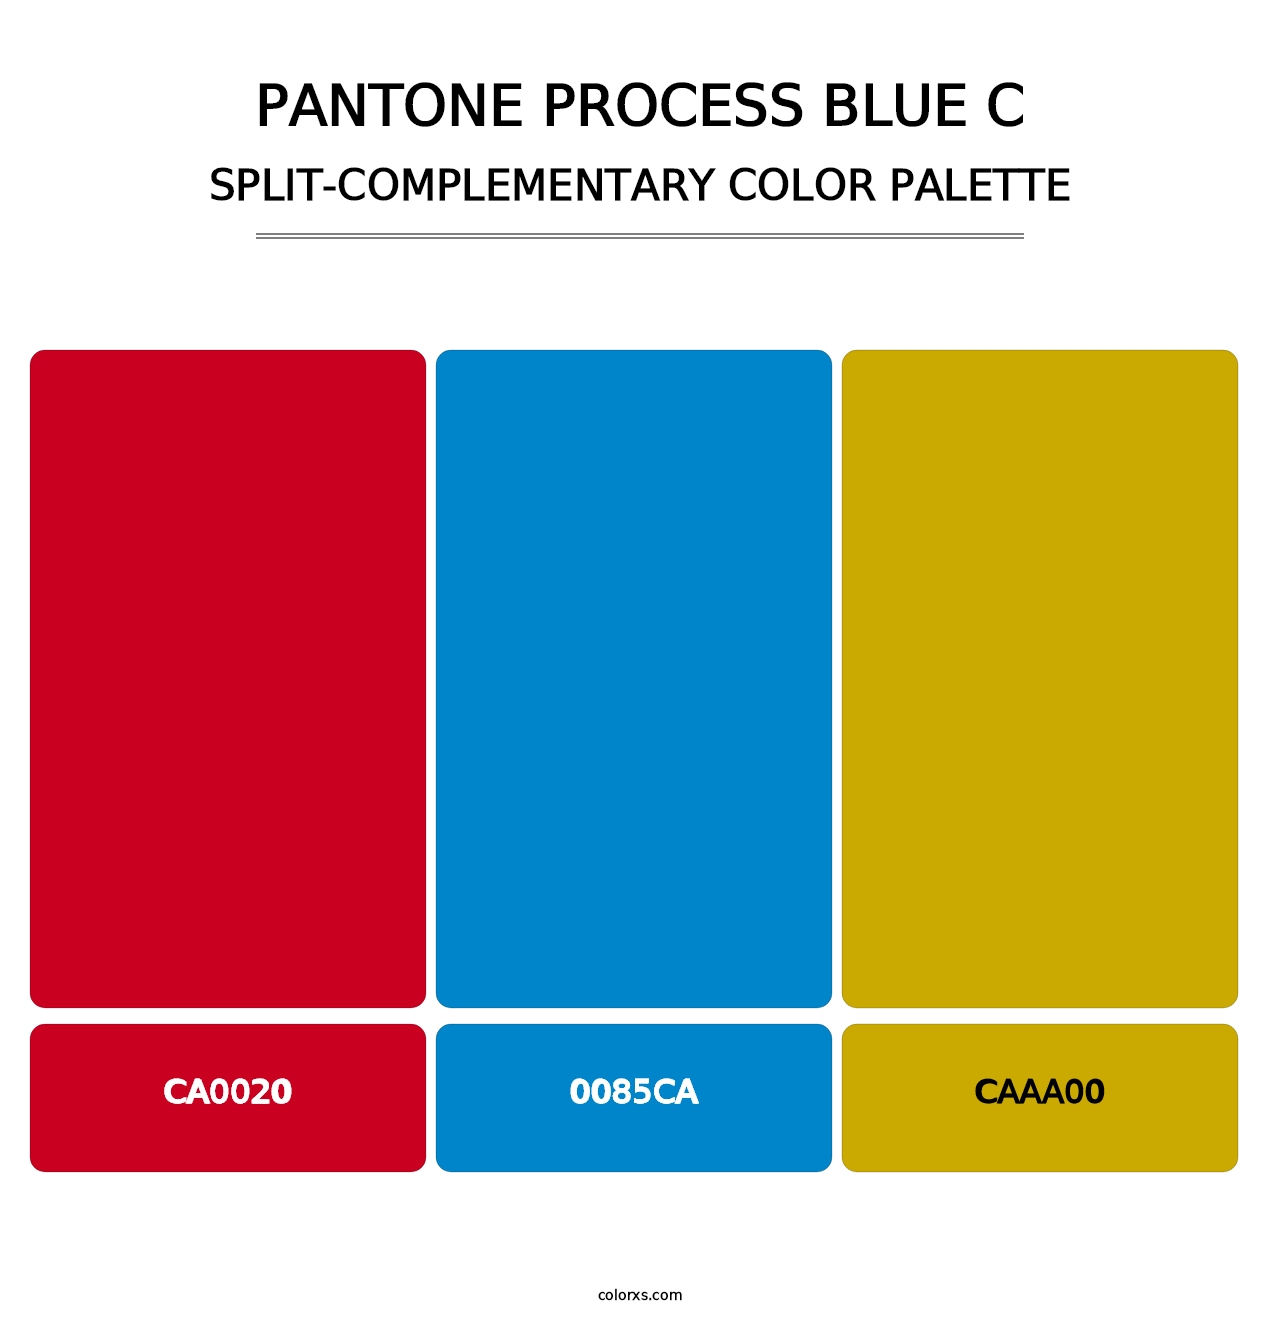 PANTONE Process Blue C - Split-Complementary Color Palette